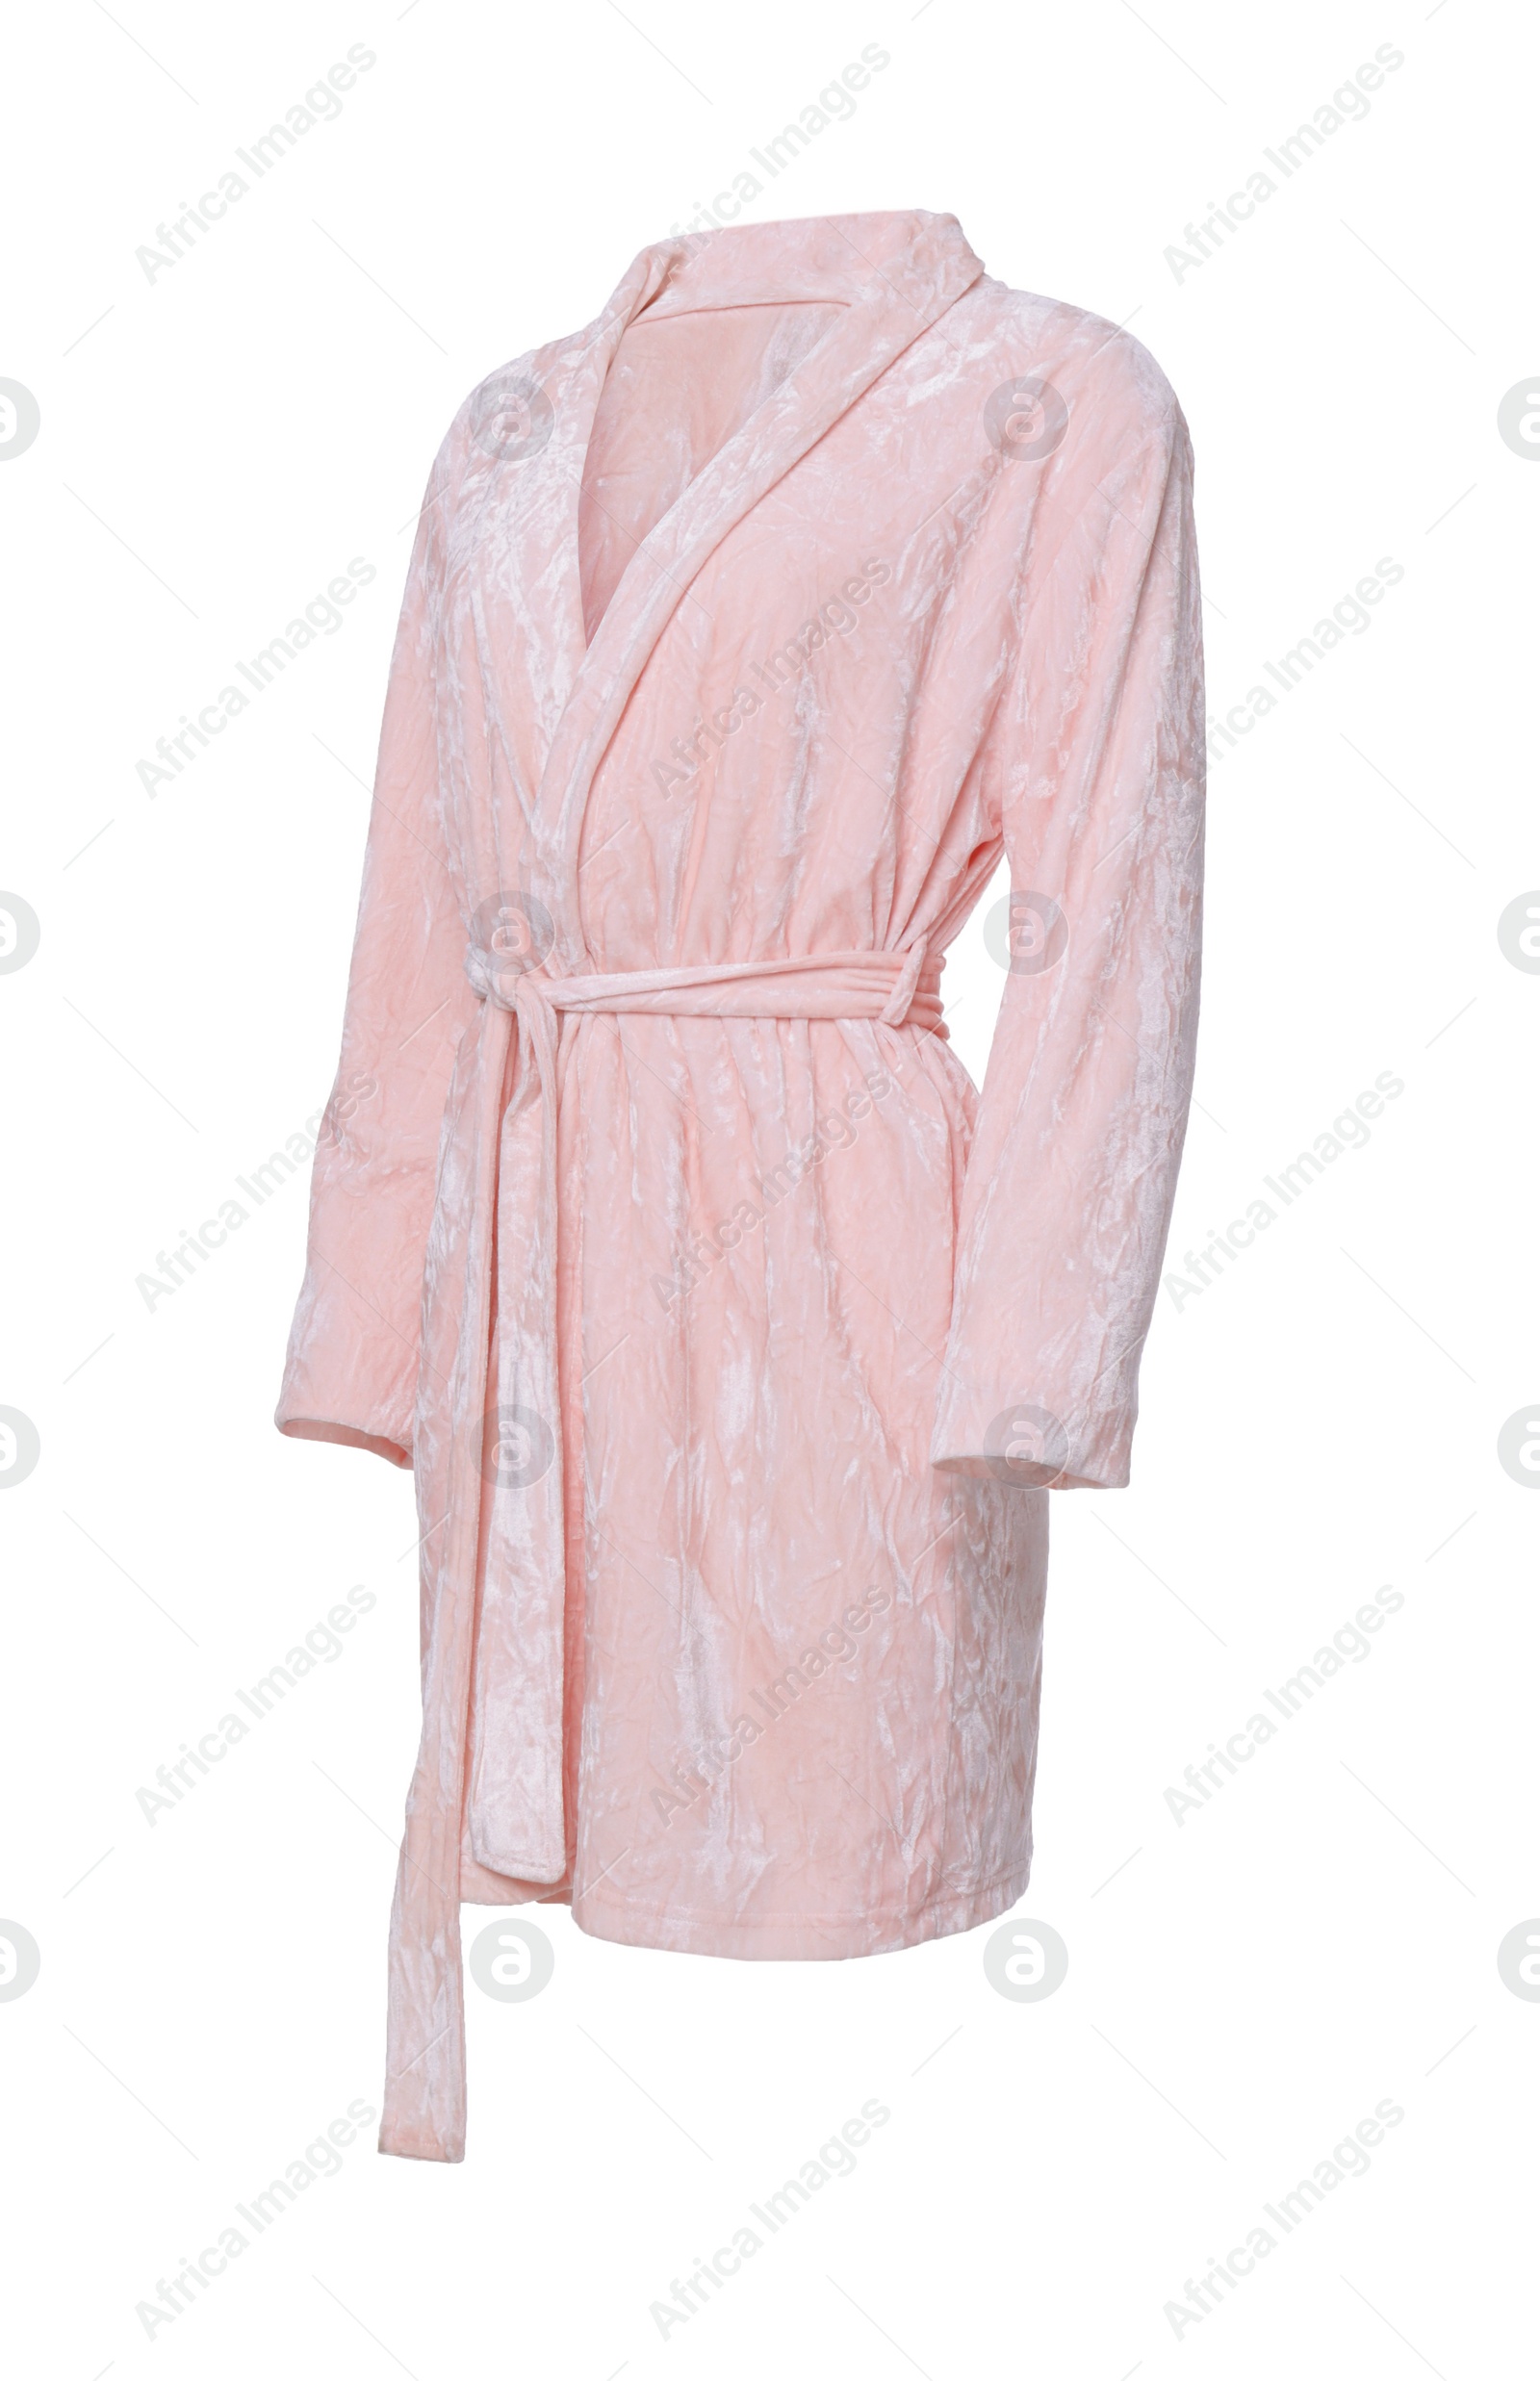 Image of Soft pink velour bathrobe isolated on white